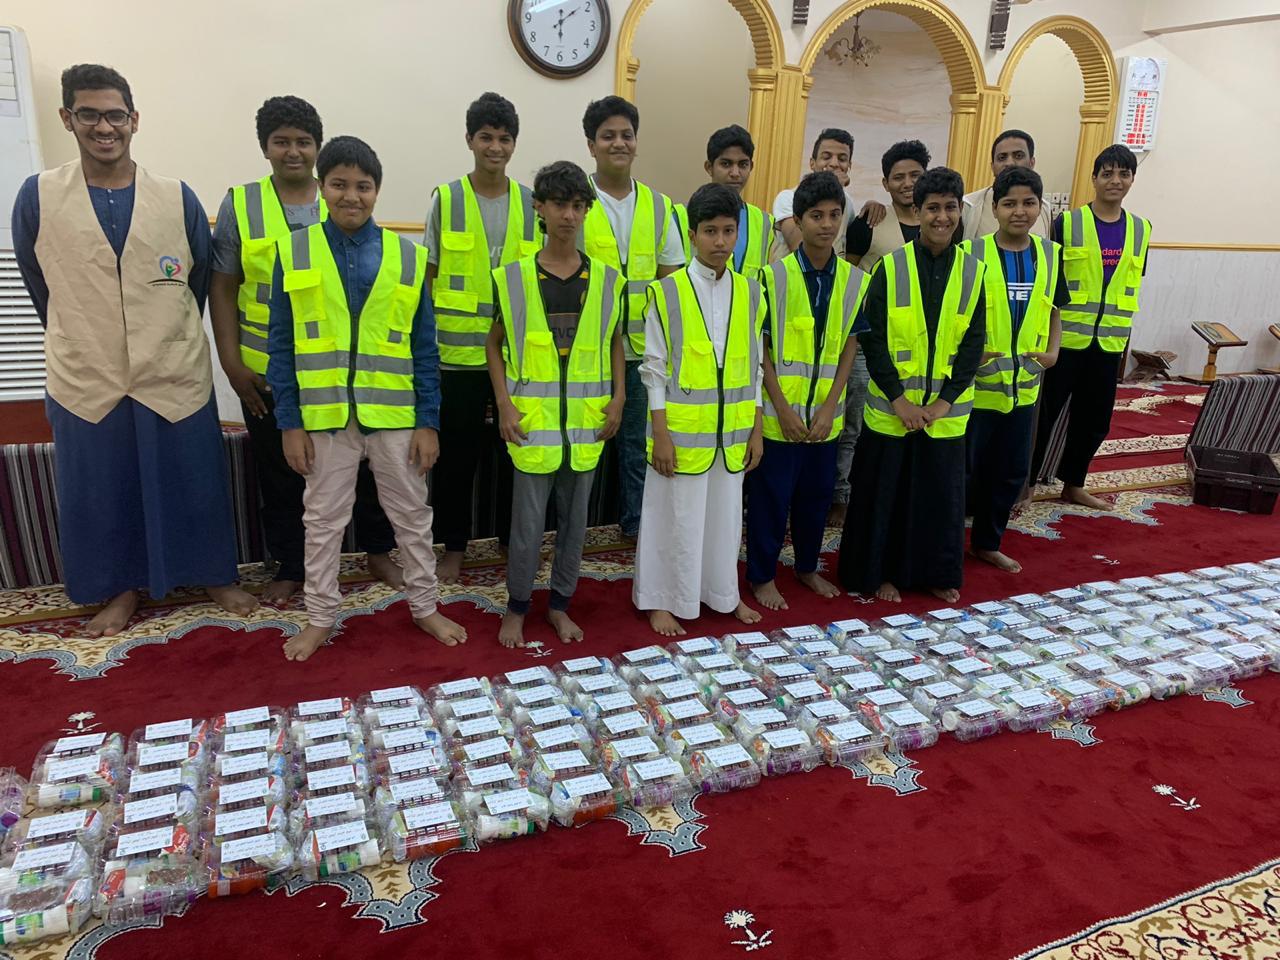 فريق النخبة التطوعي يُطلق مبادرة إفطار صائم ويُوزع 250 وجبة بجازان